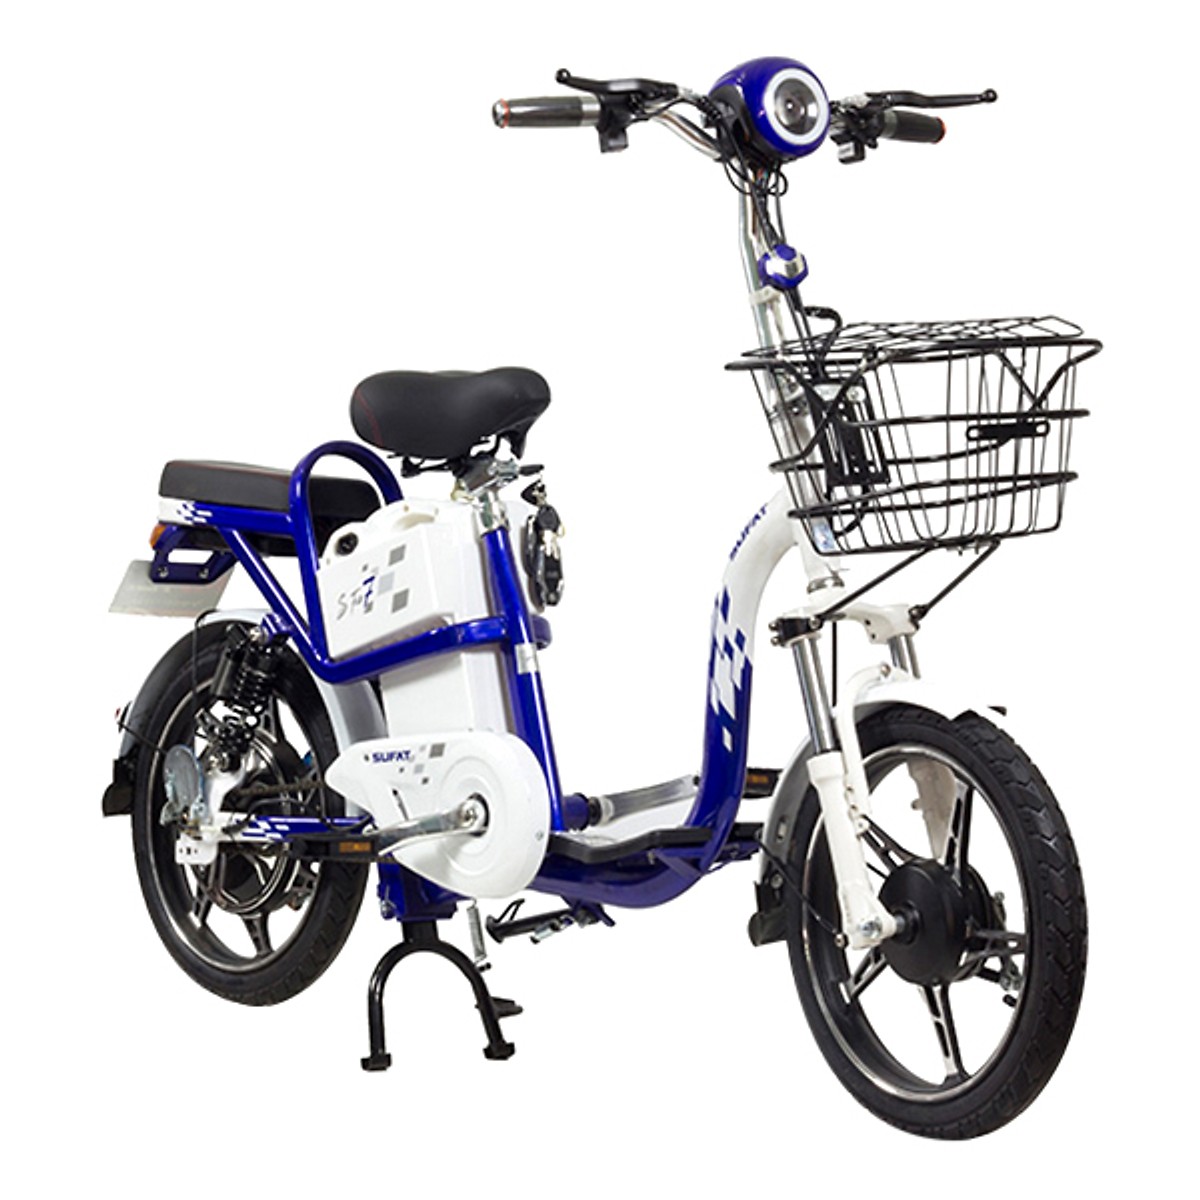 Xe đạp điện Sufat SF7 kiểu dáng đẹp, dễ di chuyển